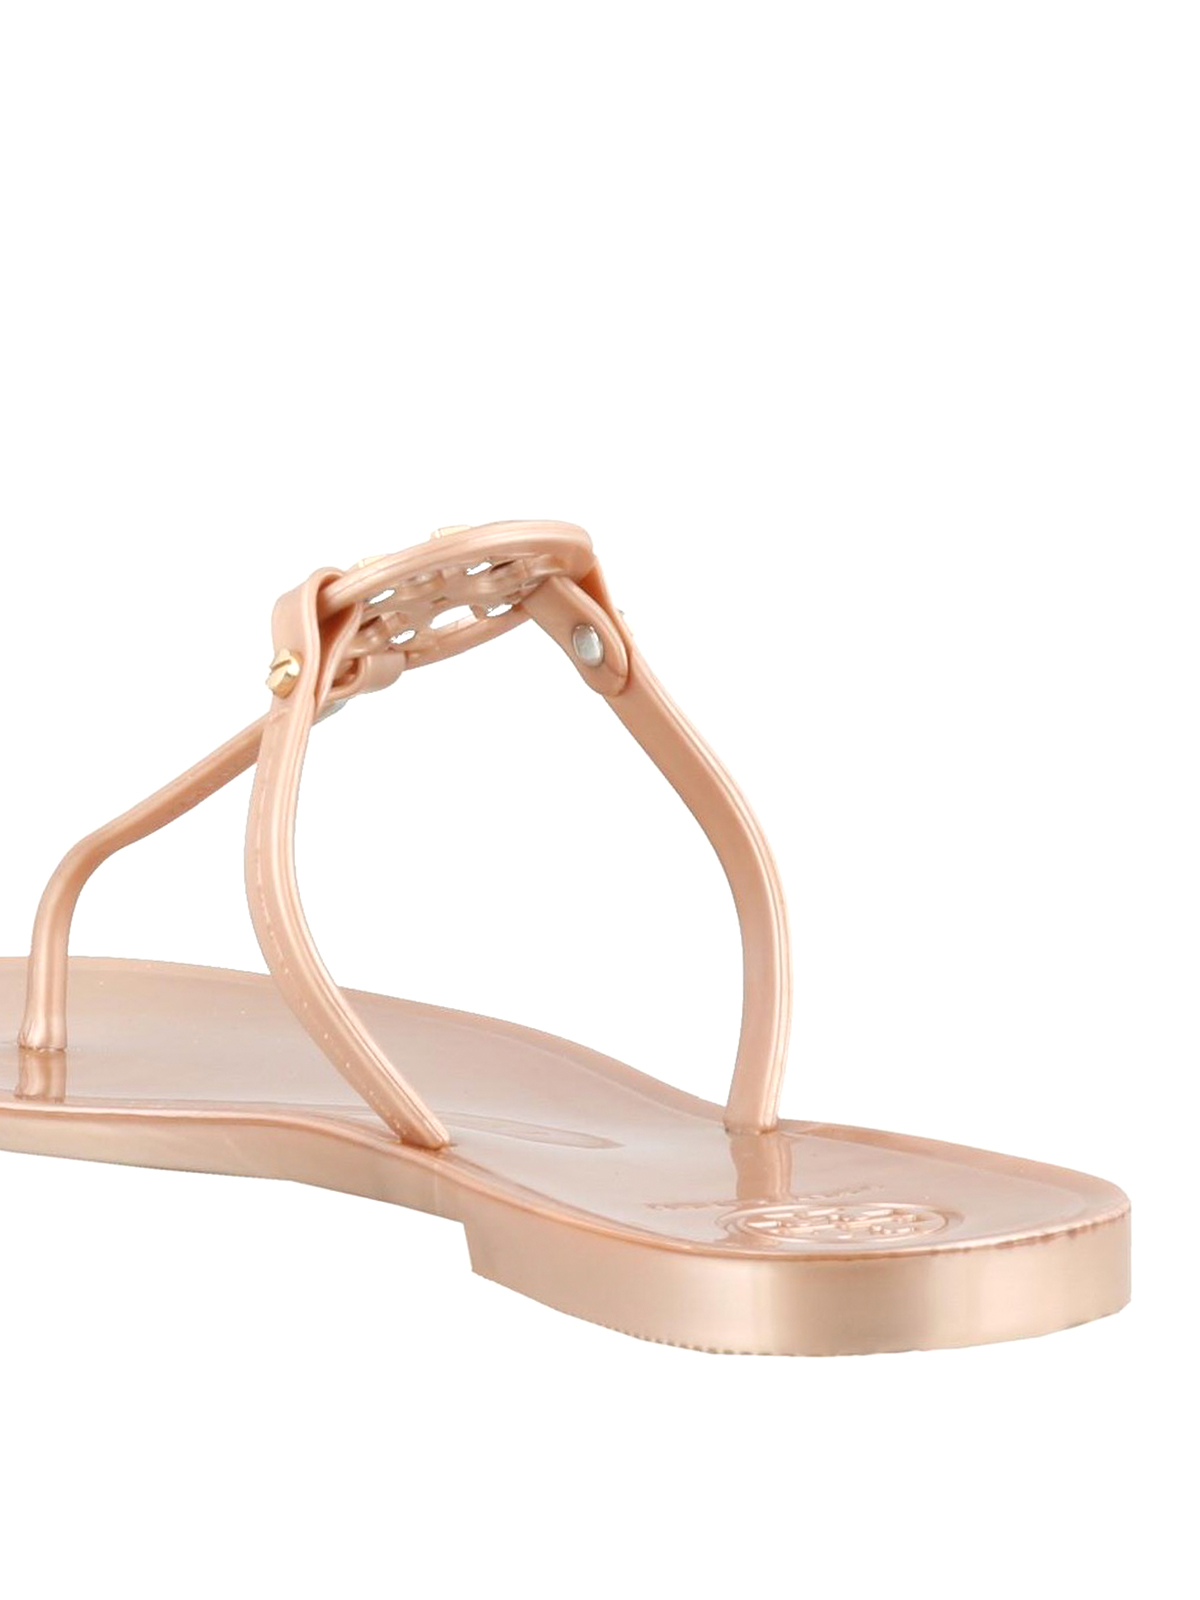 Flip flops Tory Burch - Mini Miller Jelly thong sandals - 51148678654